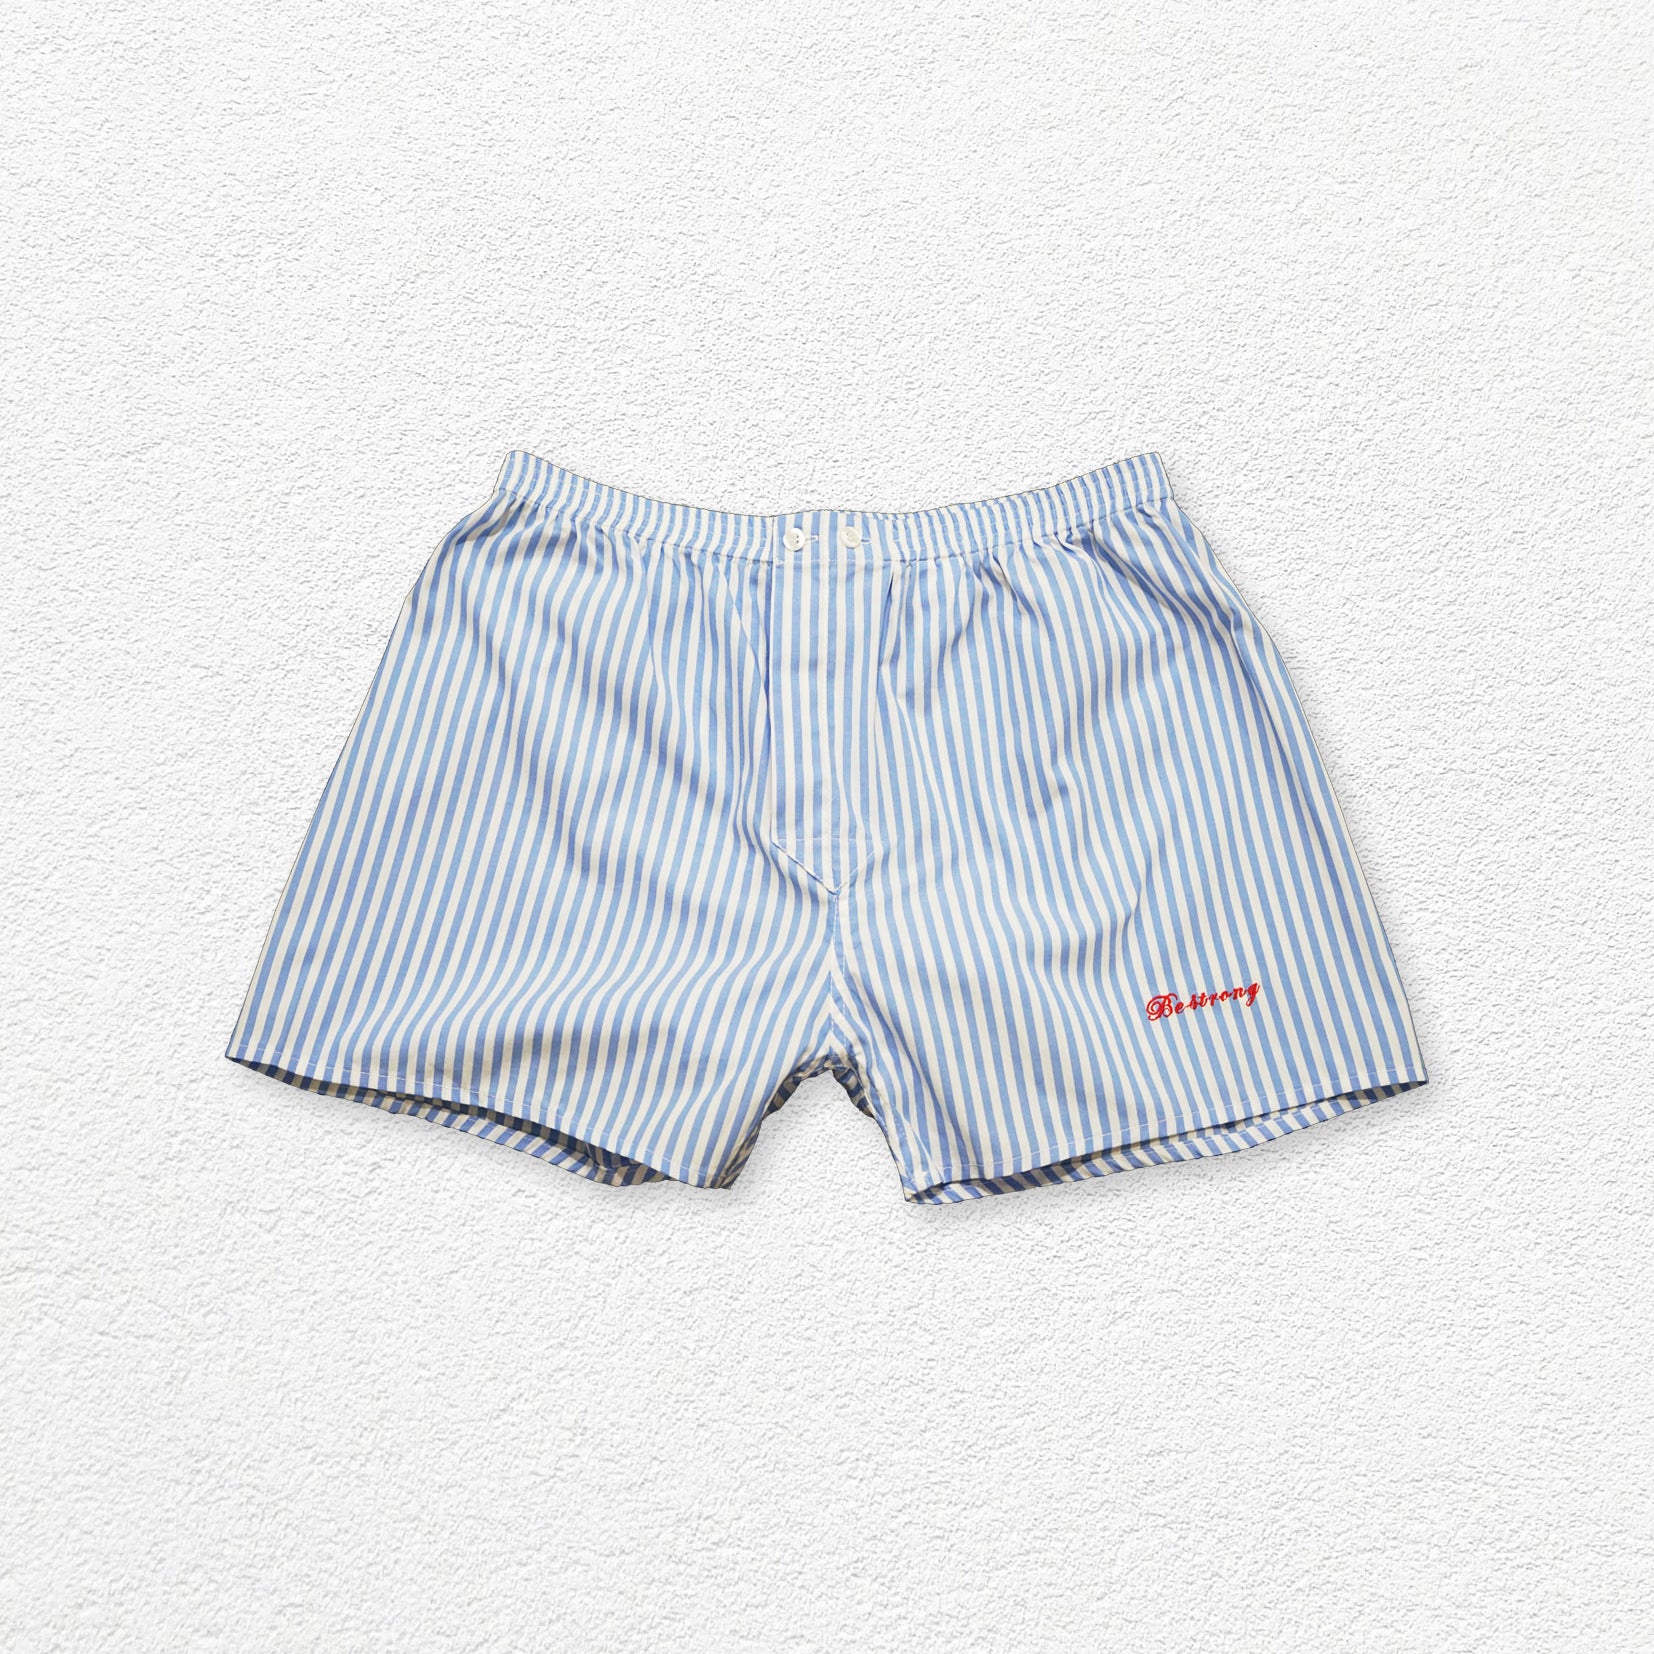 Unisex striped boxer shorts underwear - light blue